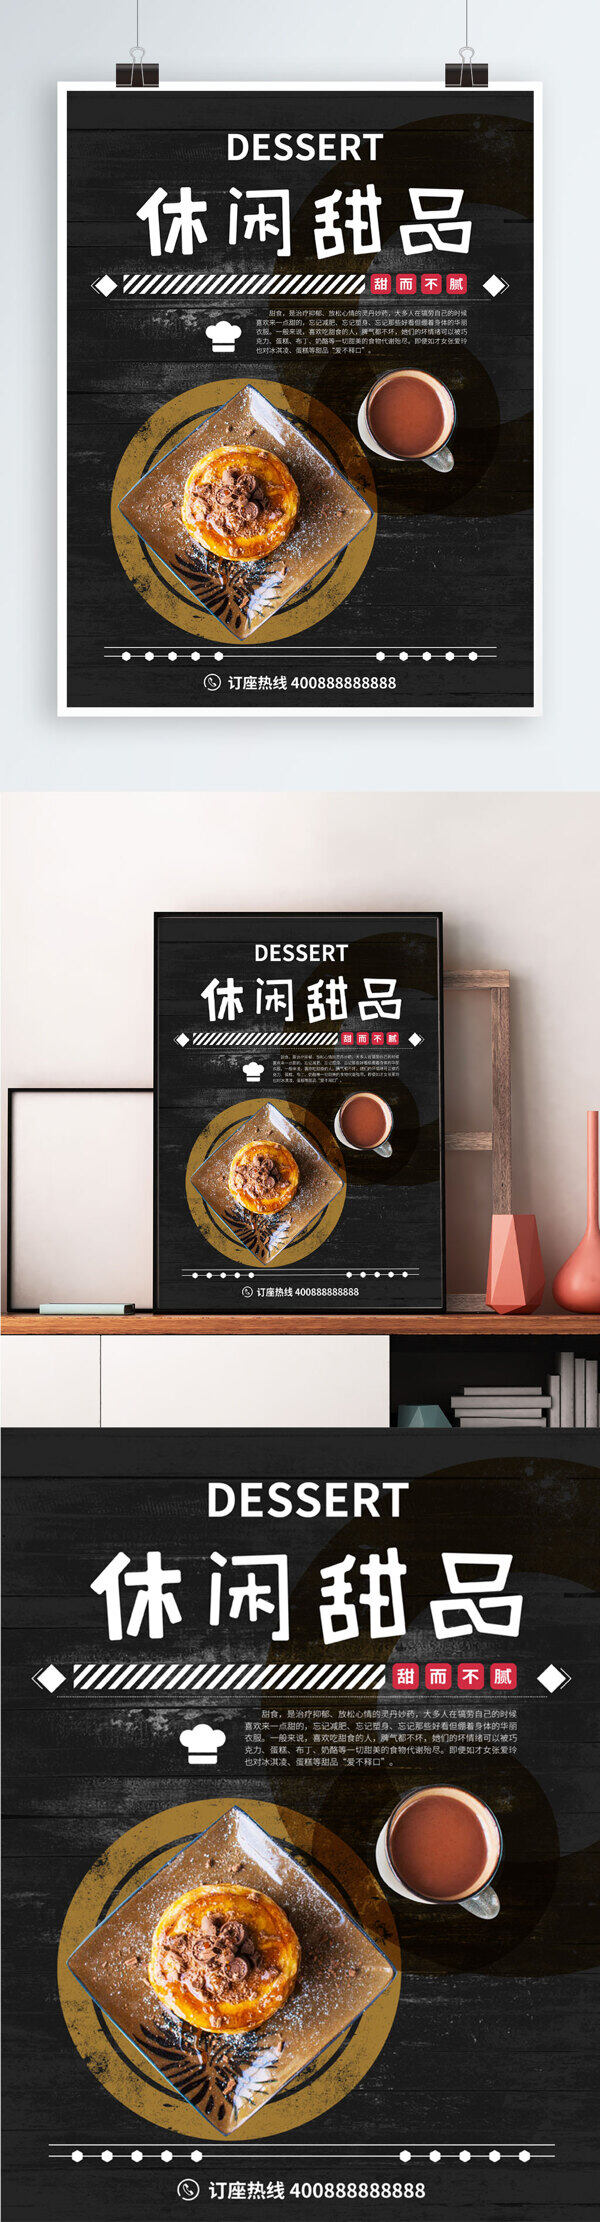 黑色酷炫时尚休闲甜品海报设计PSD模板